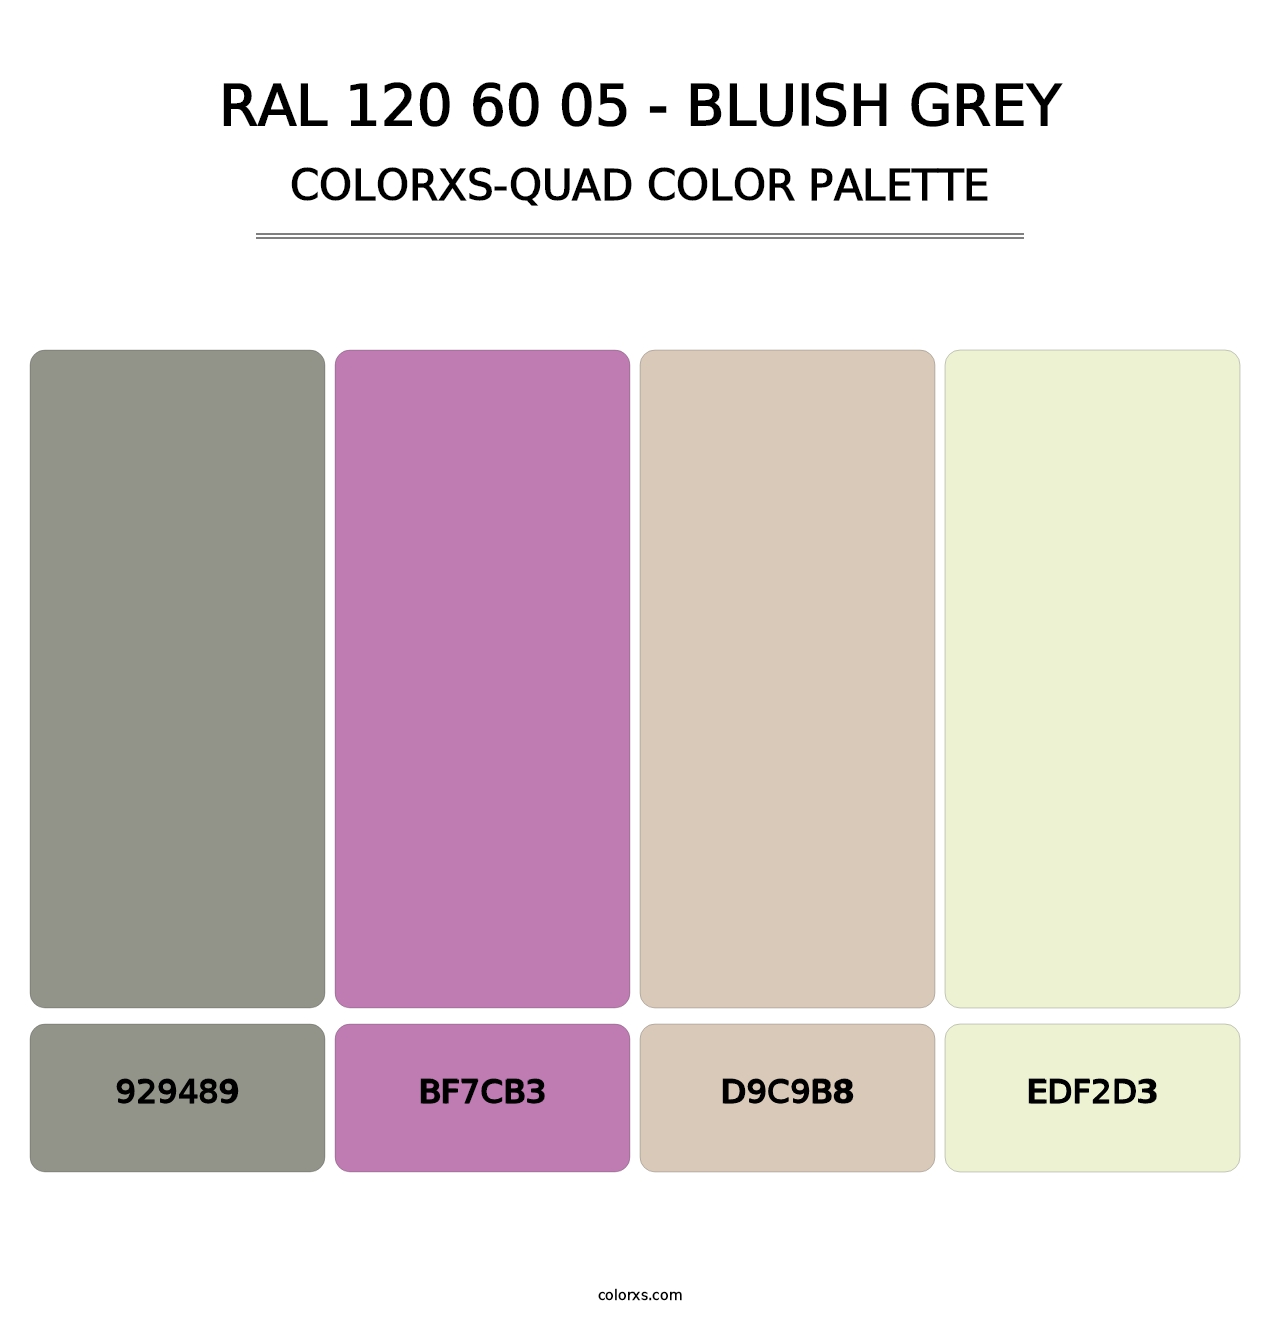 RAL 120 60 05 - Bluish Grey - Colorxs Quad Palette